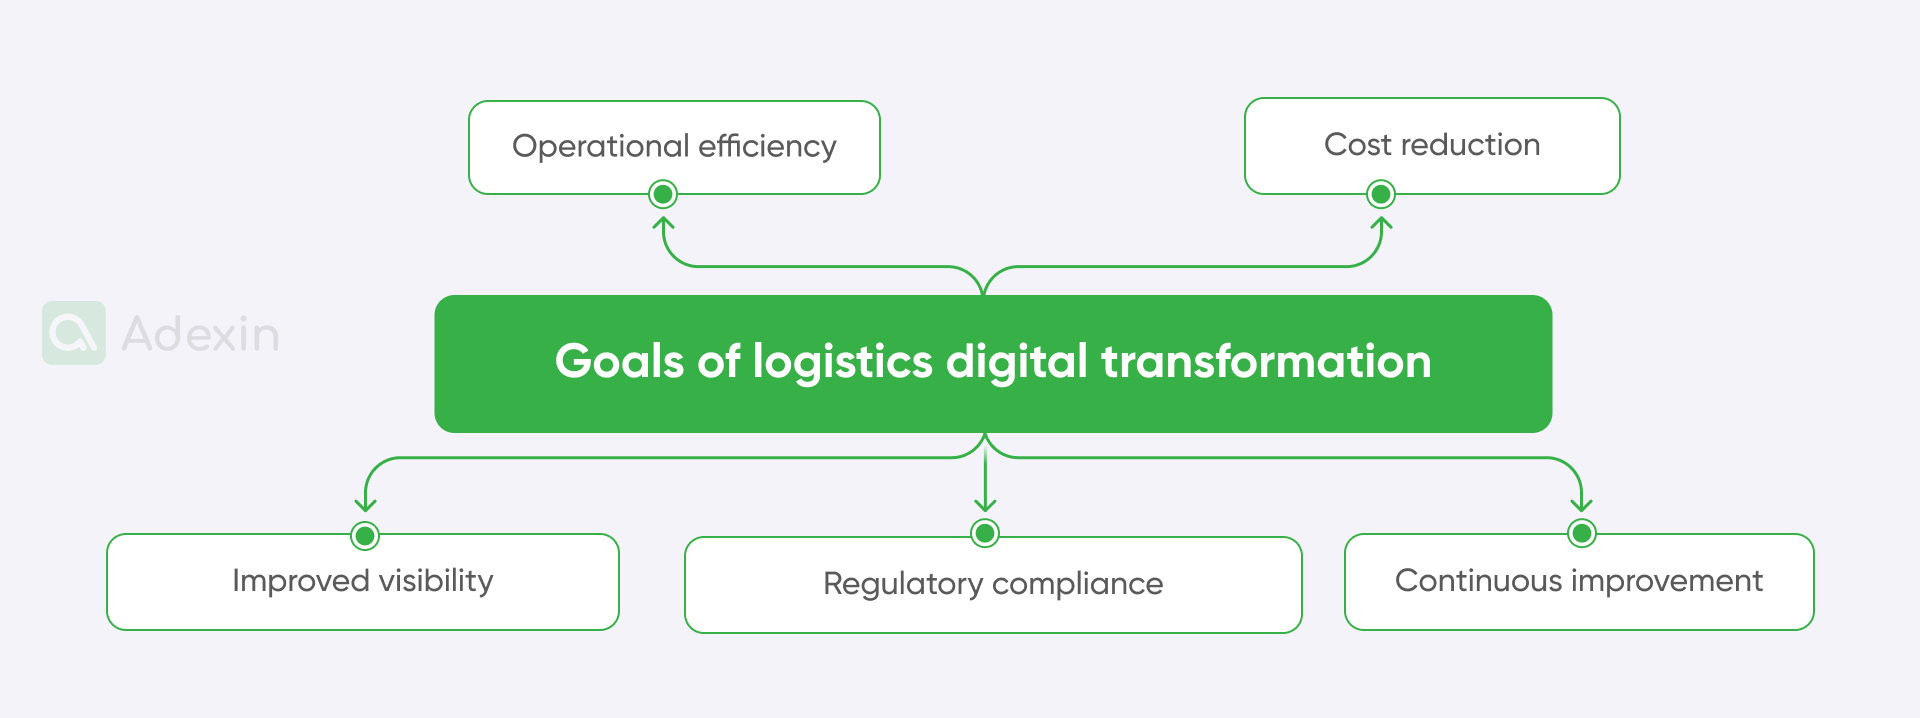 Goals of logistics digital transformation